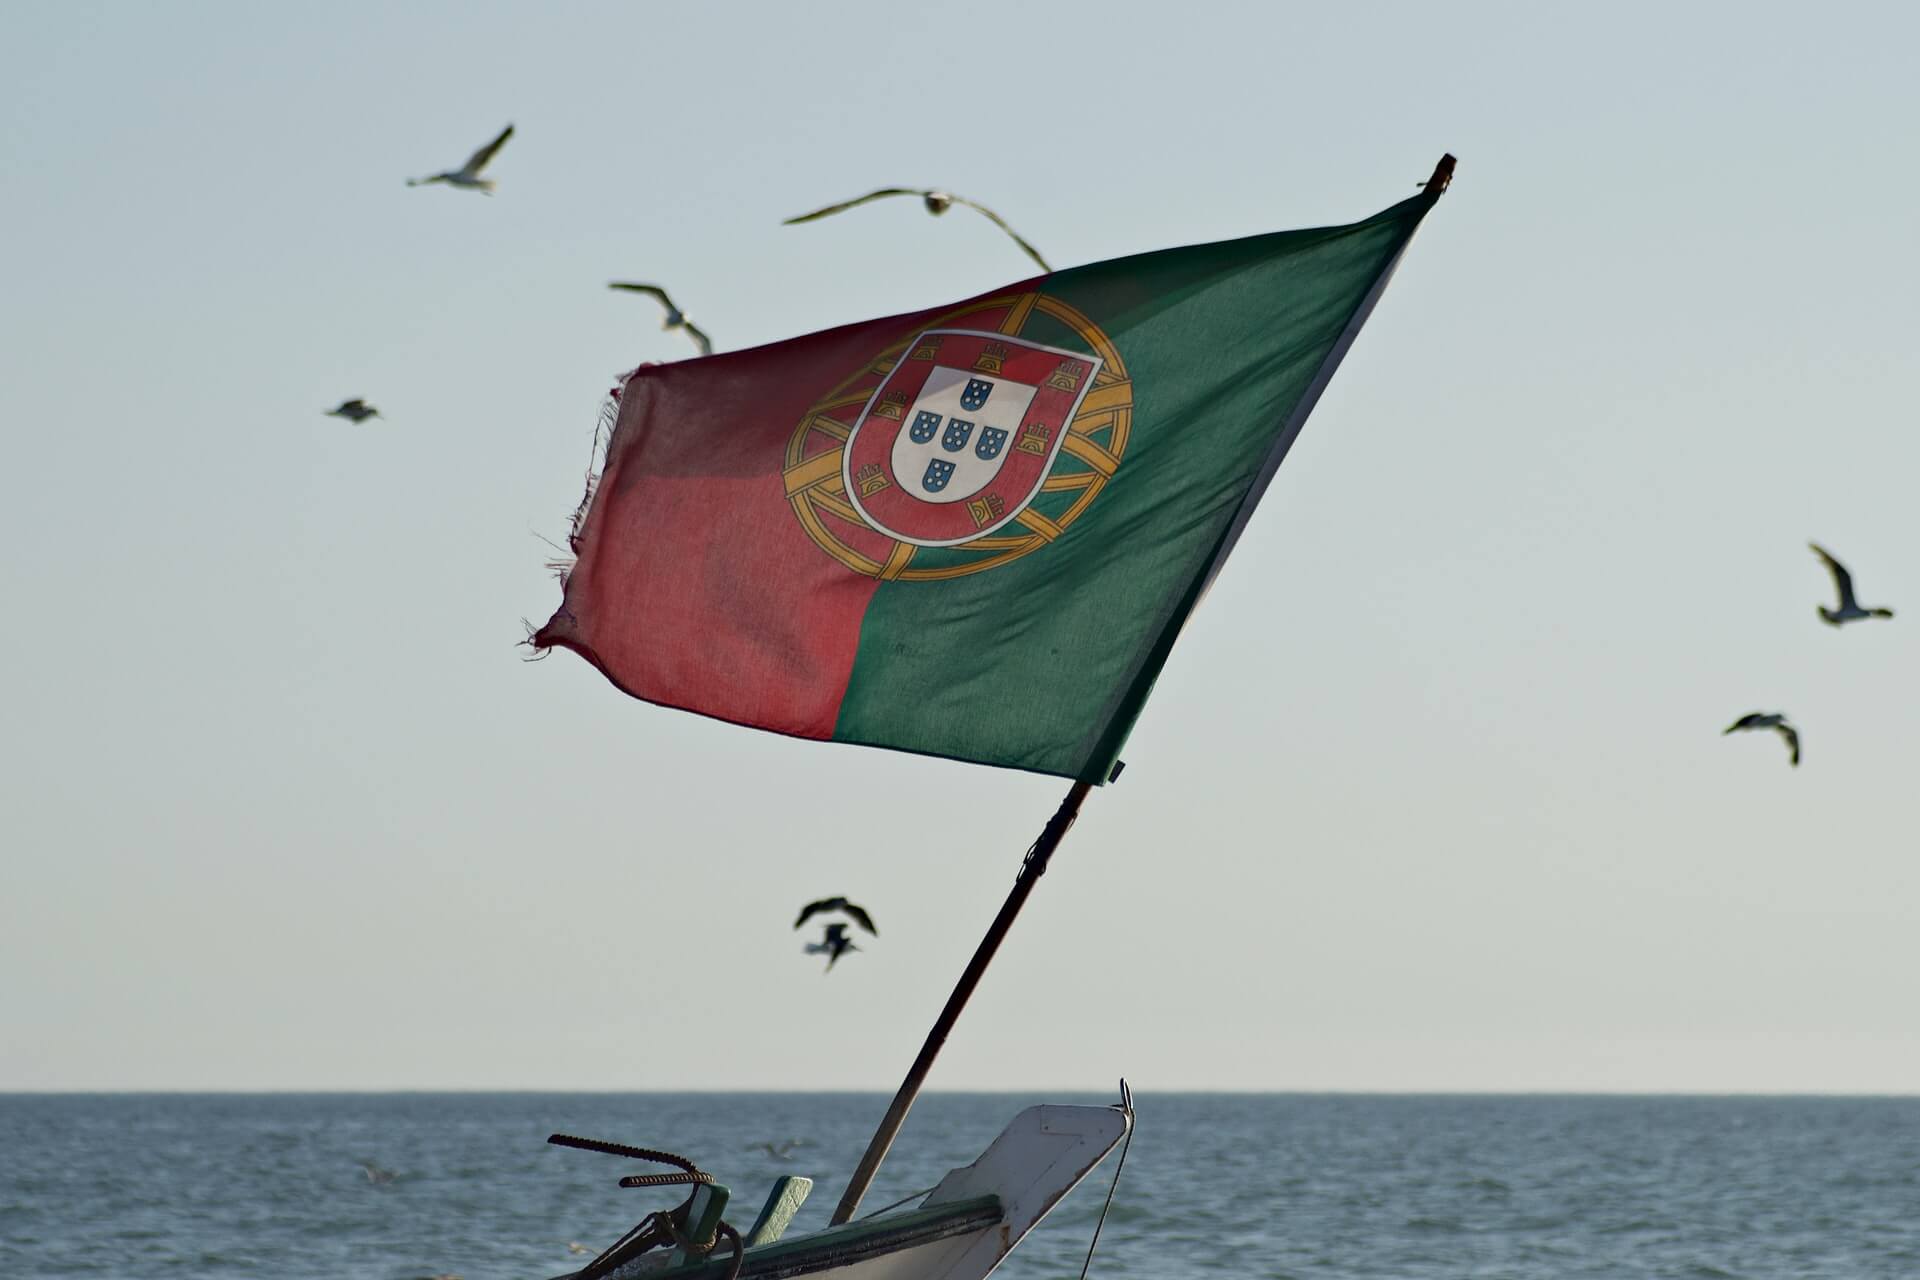 Η σημαία της Πορτογαλίας (πηγή: unsplash)